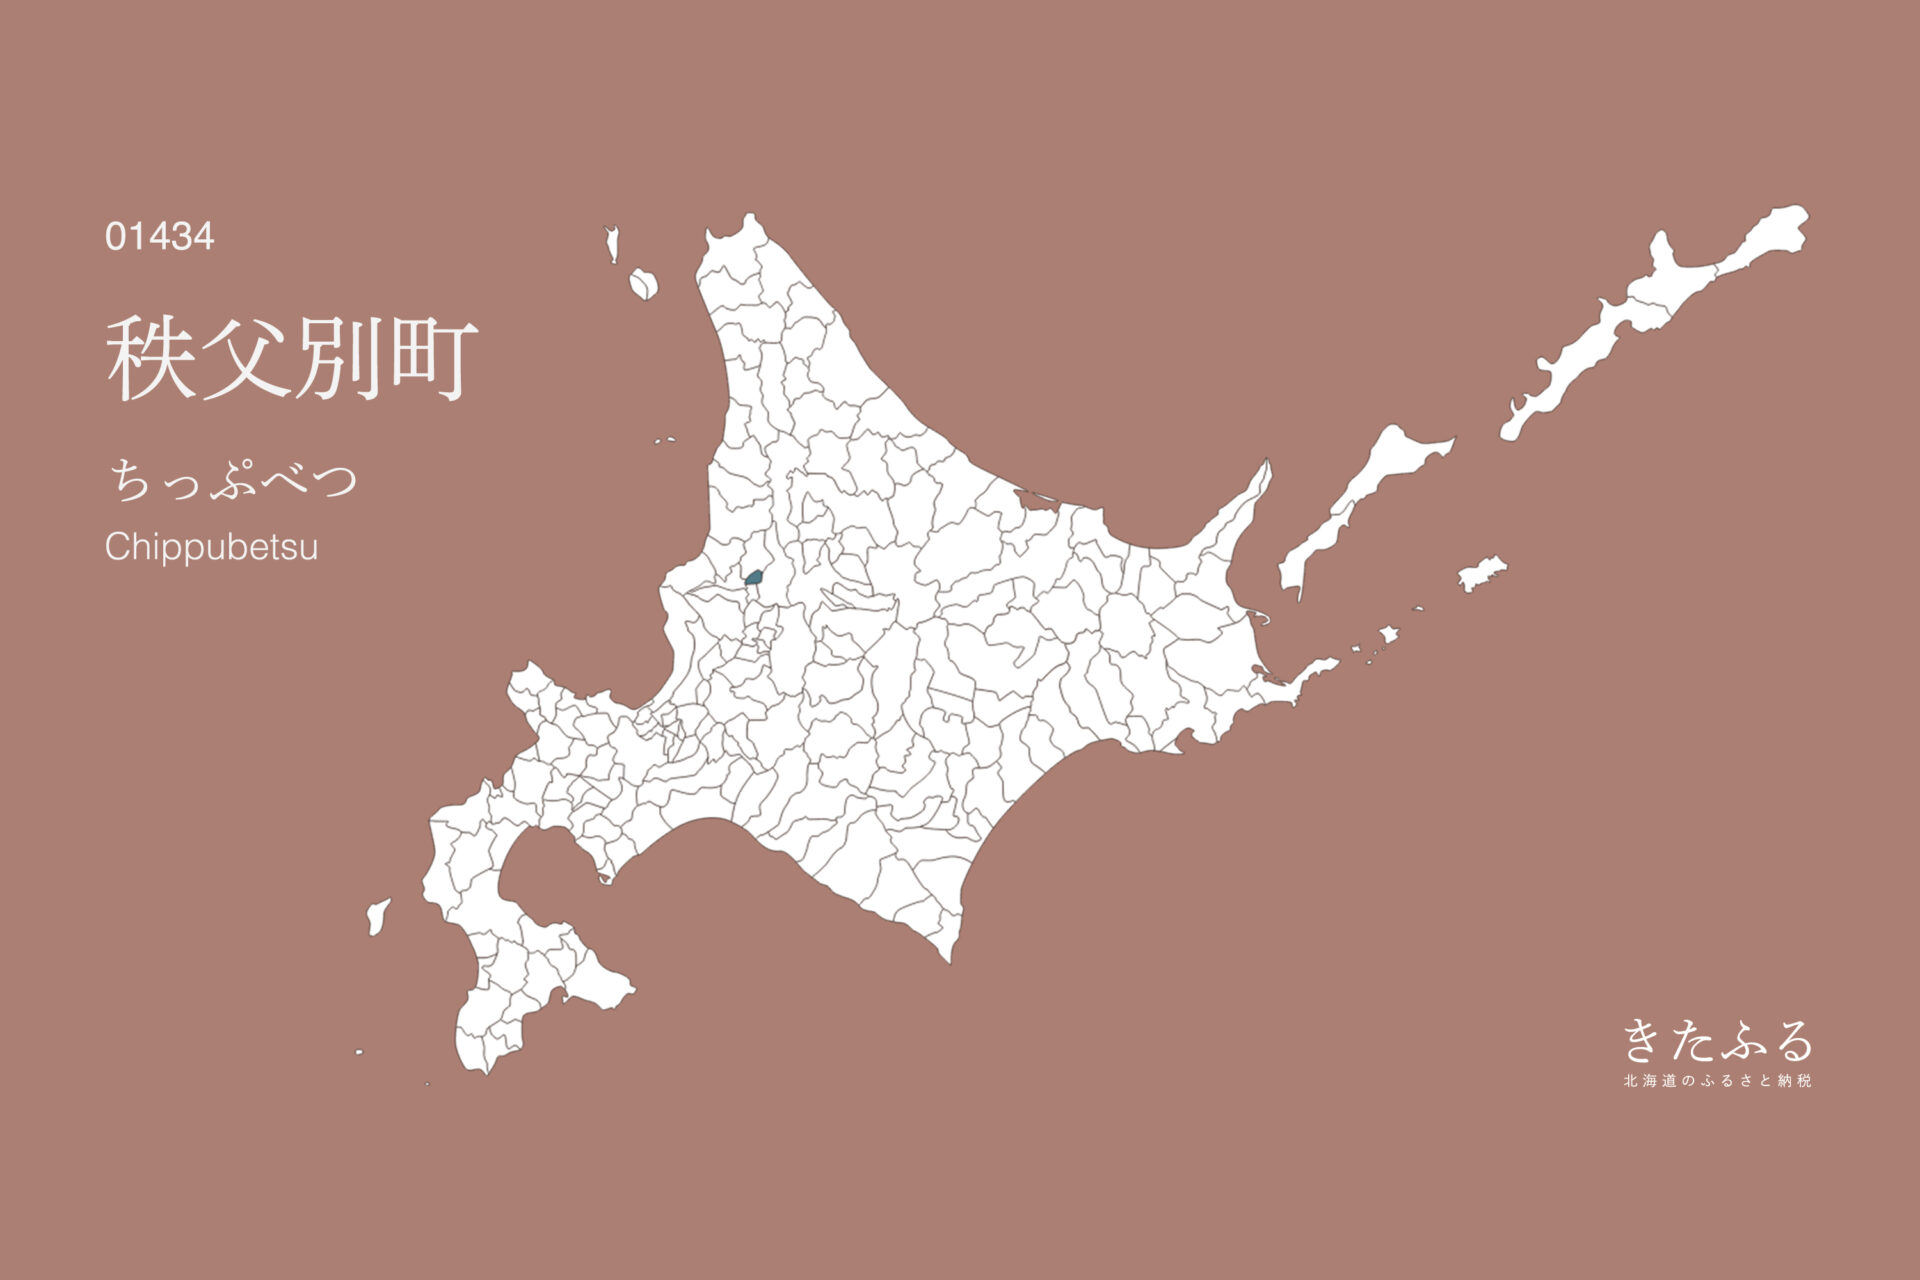 北海道「秩父別町」のふるさと納税 返礼品